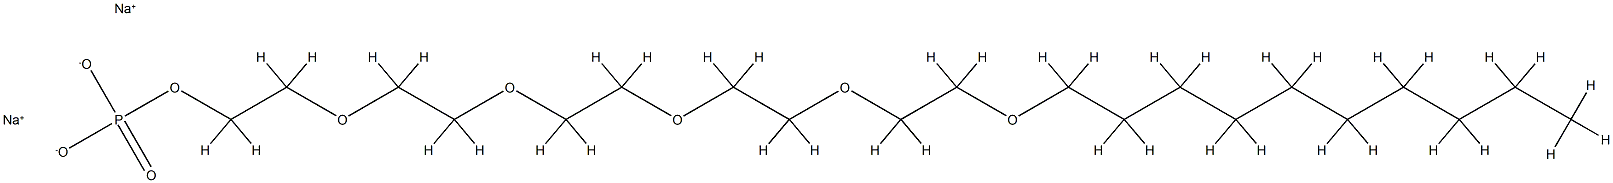 인산3,6,9,12,15-펜타옥사펜타코산-1-일디나트륨염